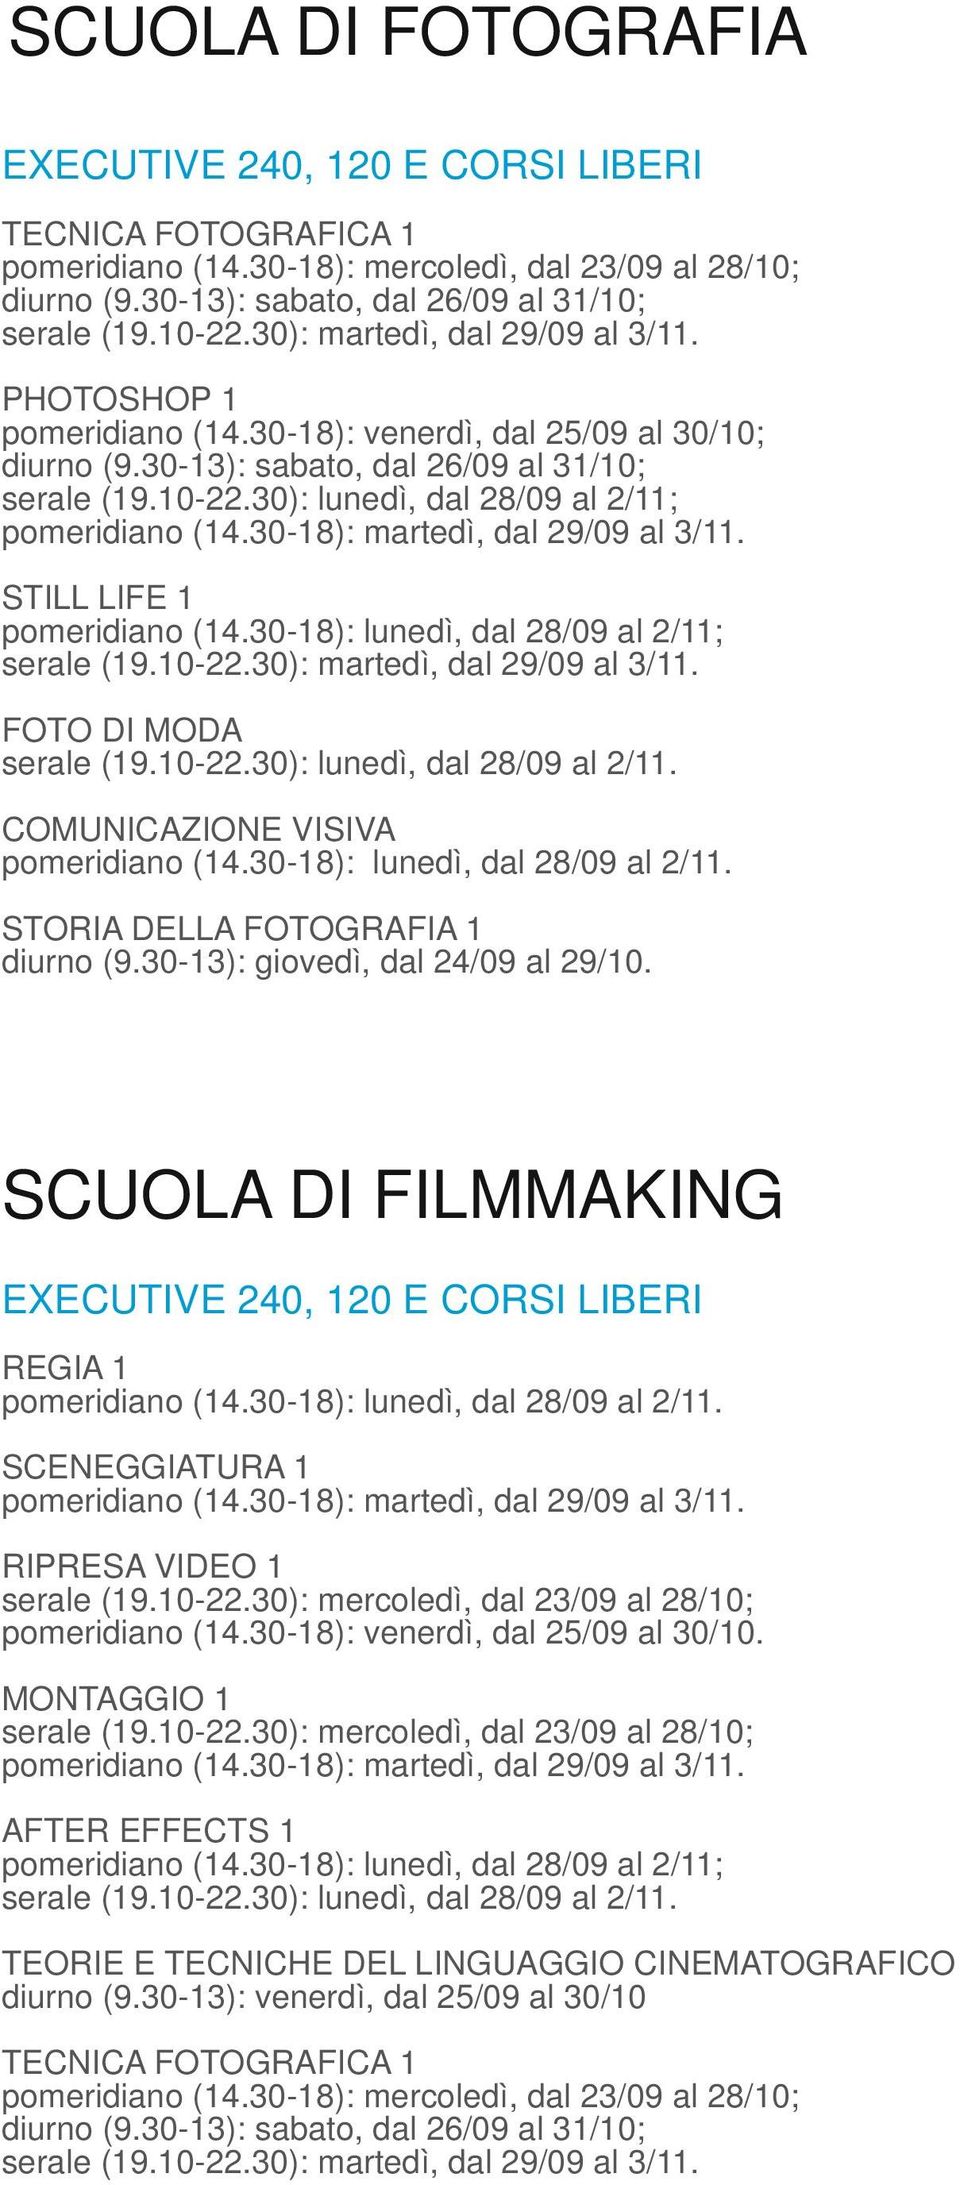 SCUOLA DI FILMMAKING REGIA 1 SCENEGGIATURA 1 RIPRESA VIDEO 1 pomeridiano (14.